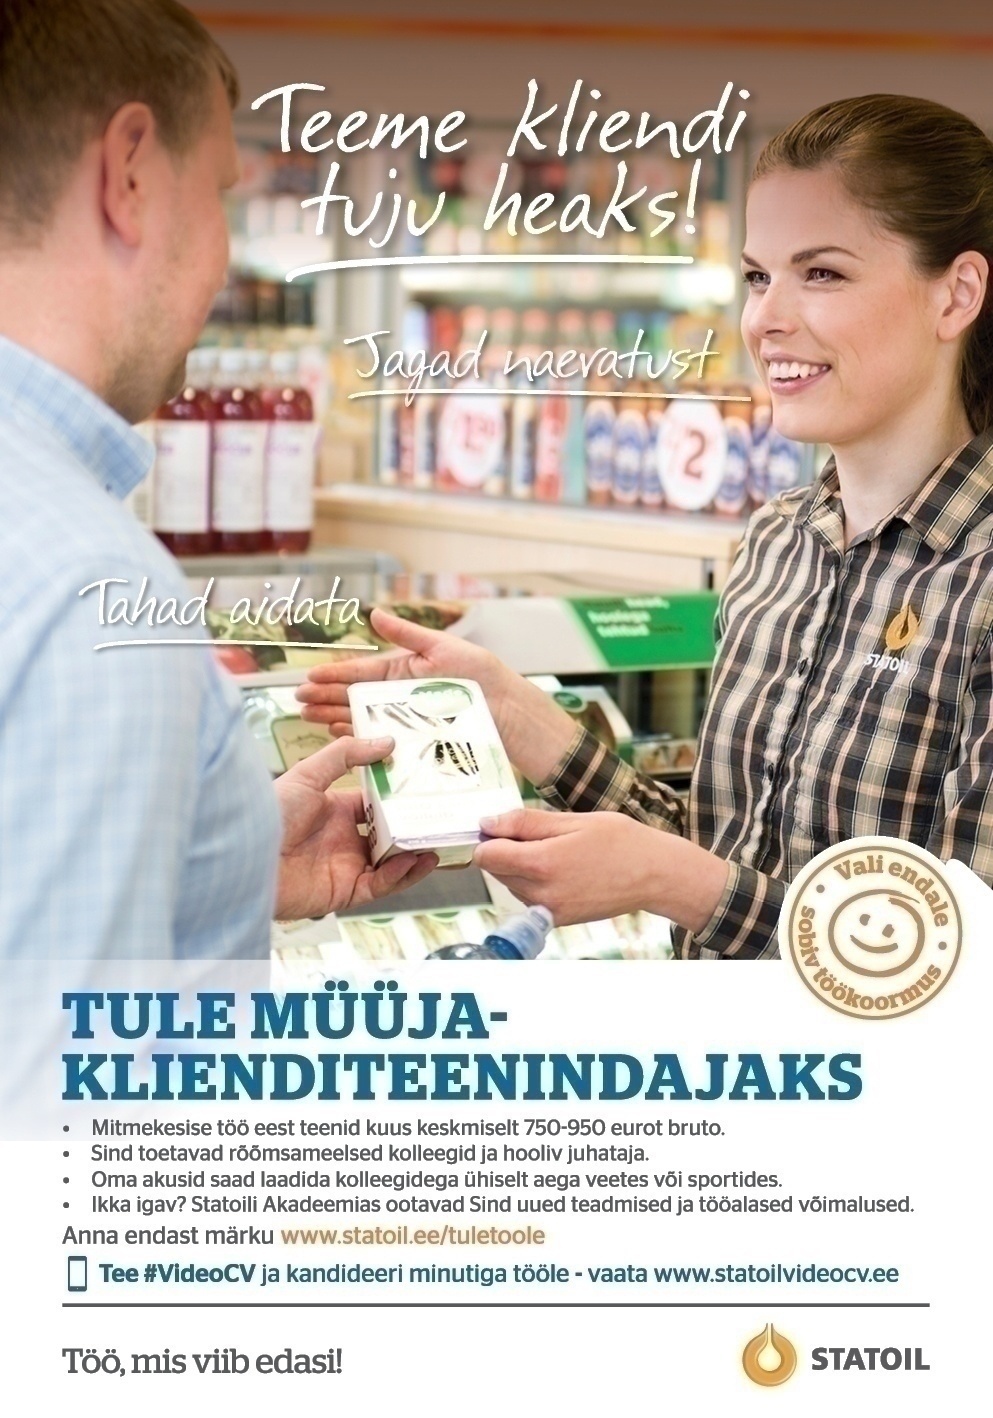 Circle K Eesti AS Müüja-klienditeenindaja Tallinna Peterburi mnt. teenindusjaama